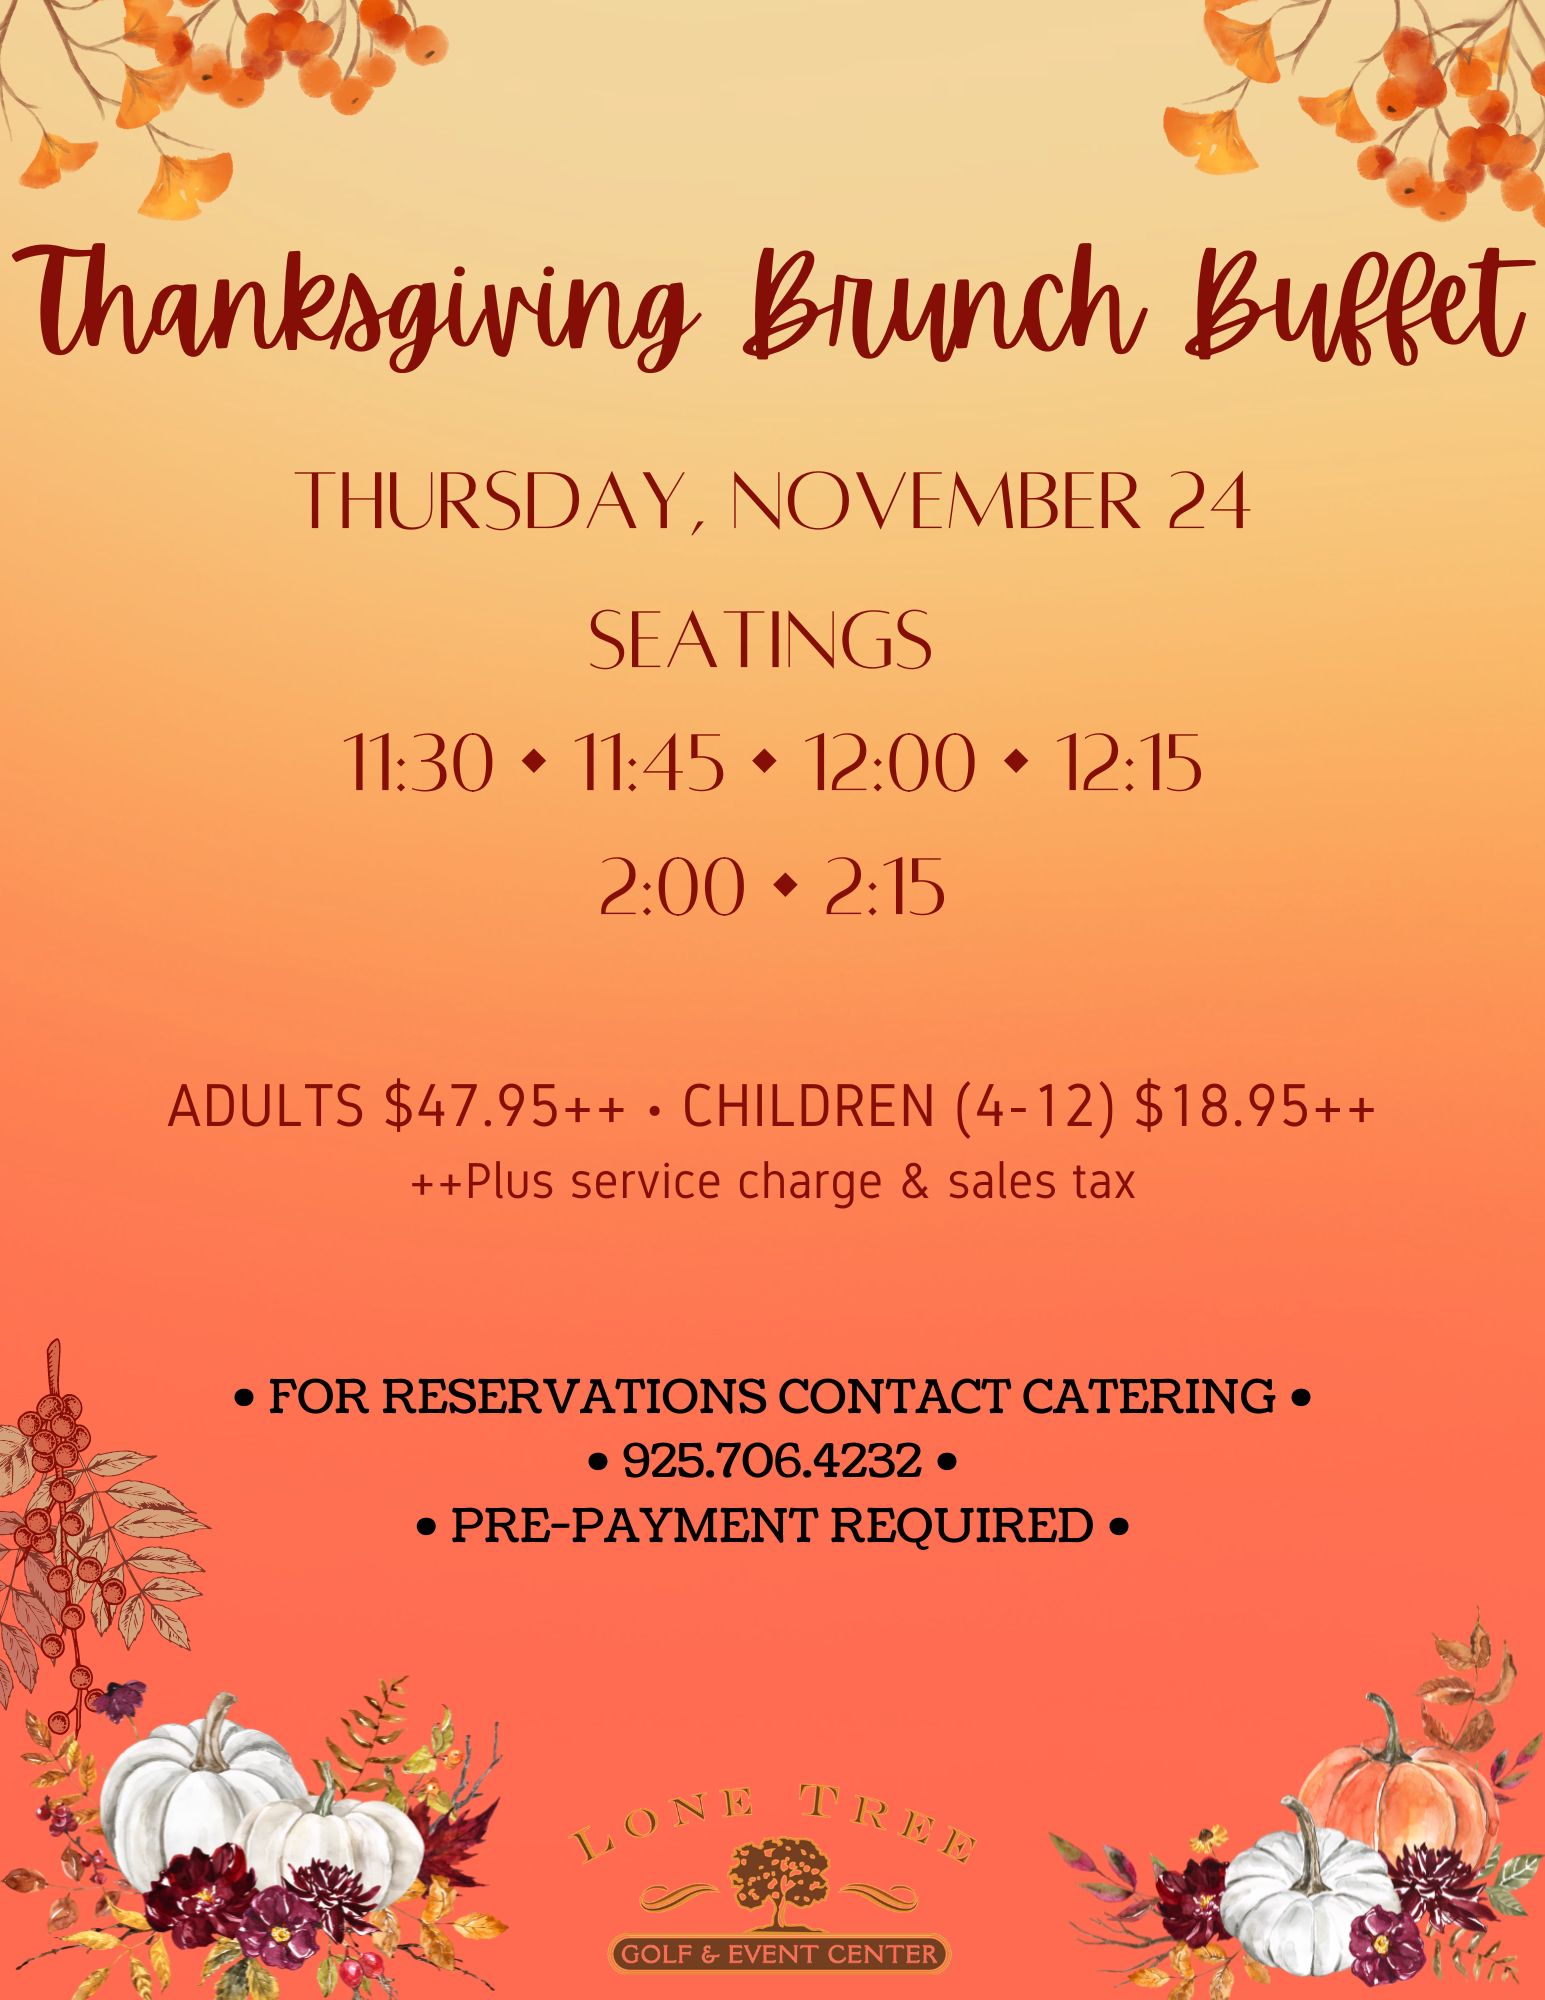 Thanksgiving Brunch Buffet Flyer